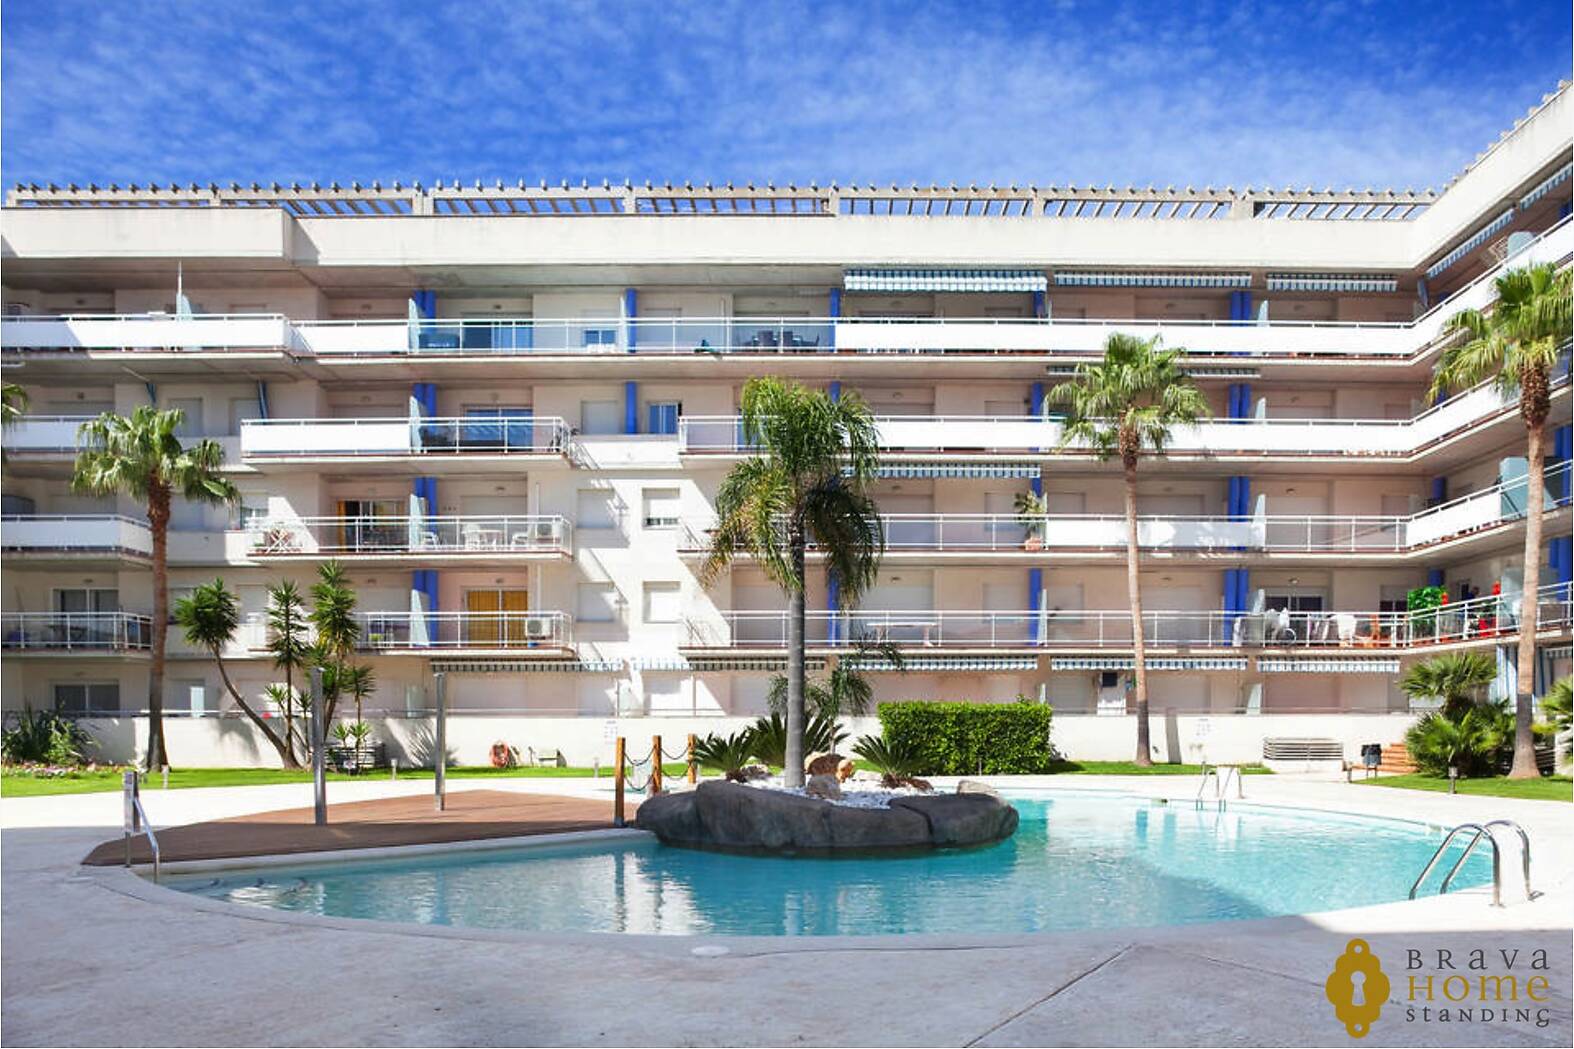 Magnífic apartament amb terrassa i piscina a Roses - Santa Margarida